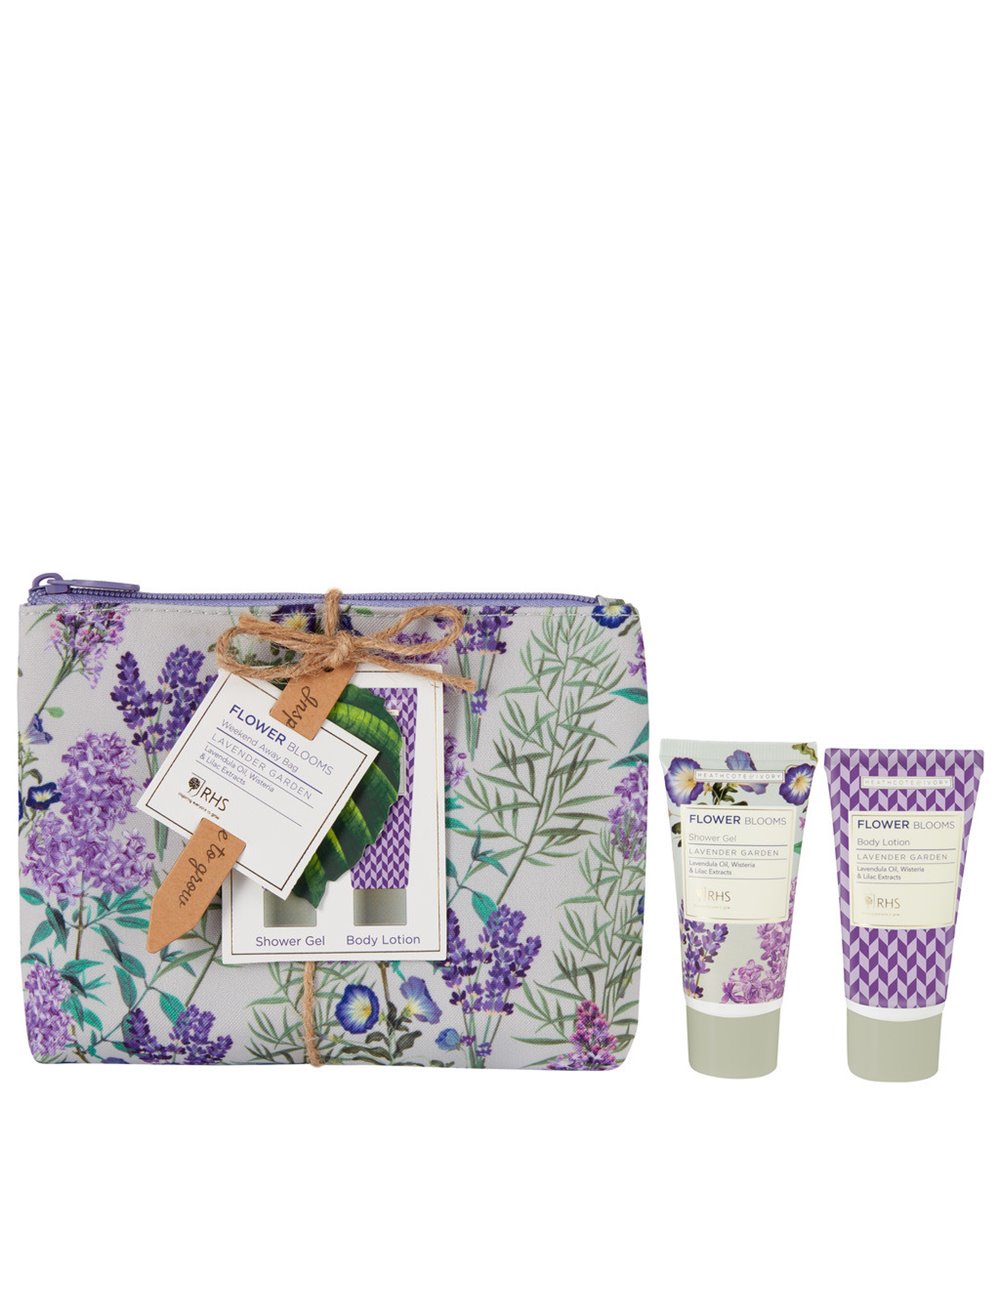 RHS Lavender Garden - Weekend away bag